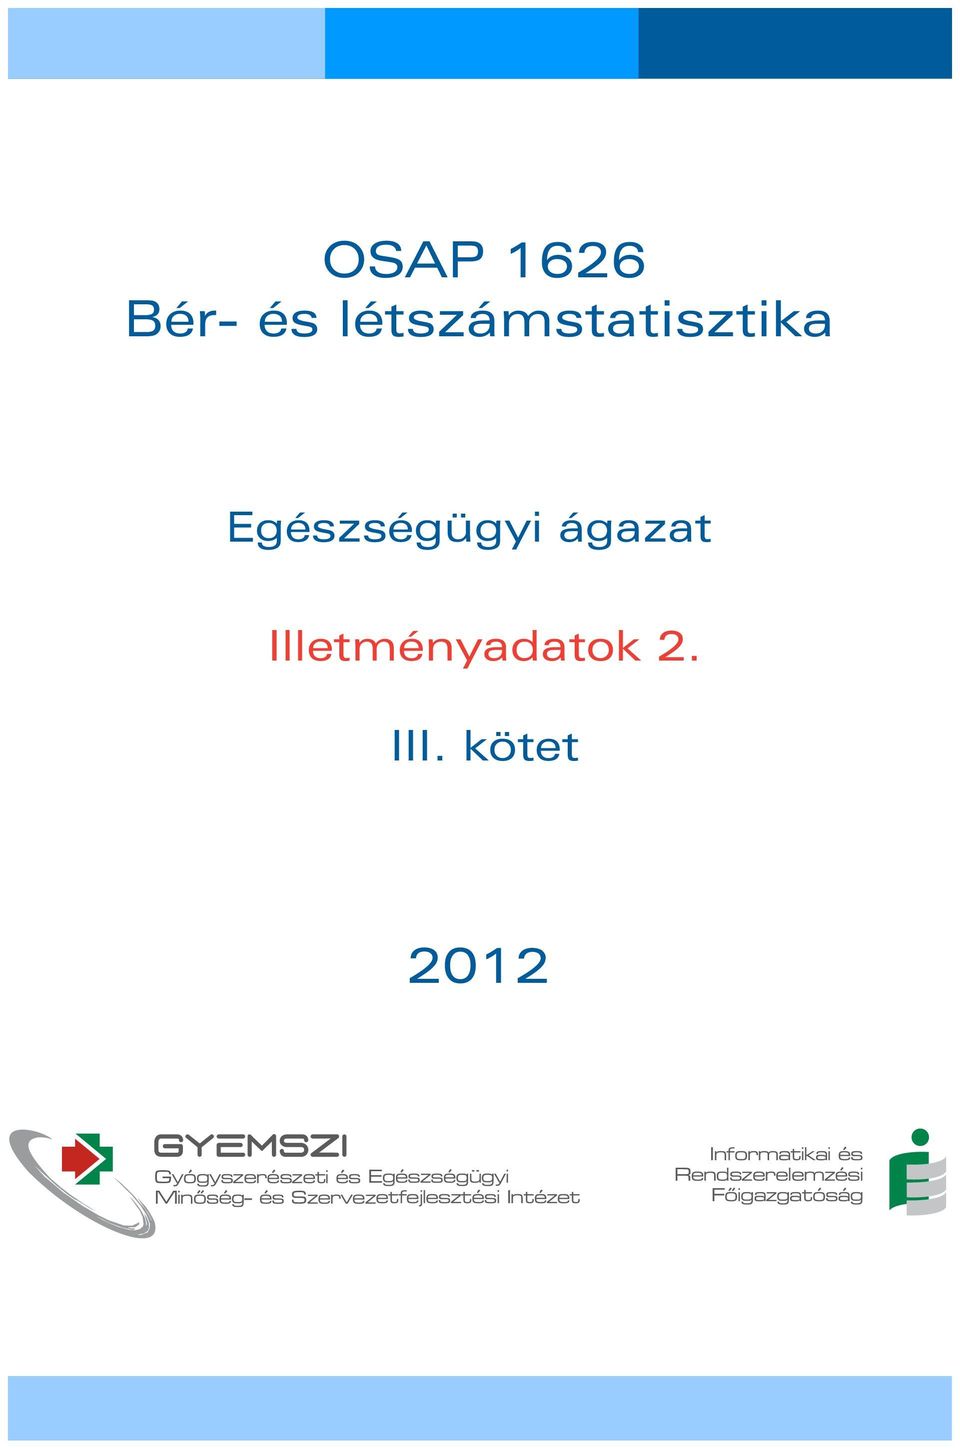 kötet 2012 GYEMSZI Gyógyszerészeti és Egészségügyi